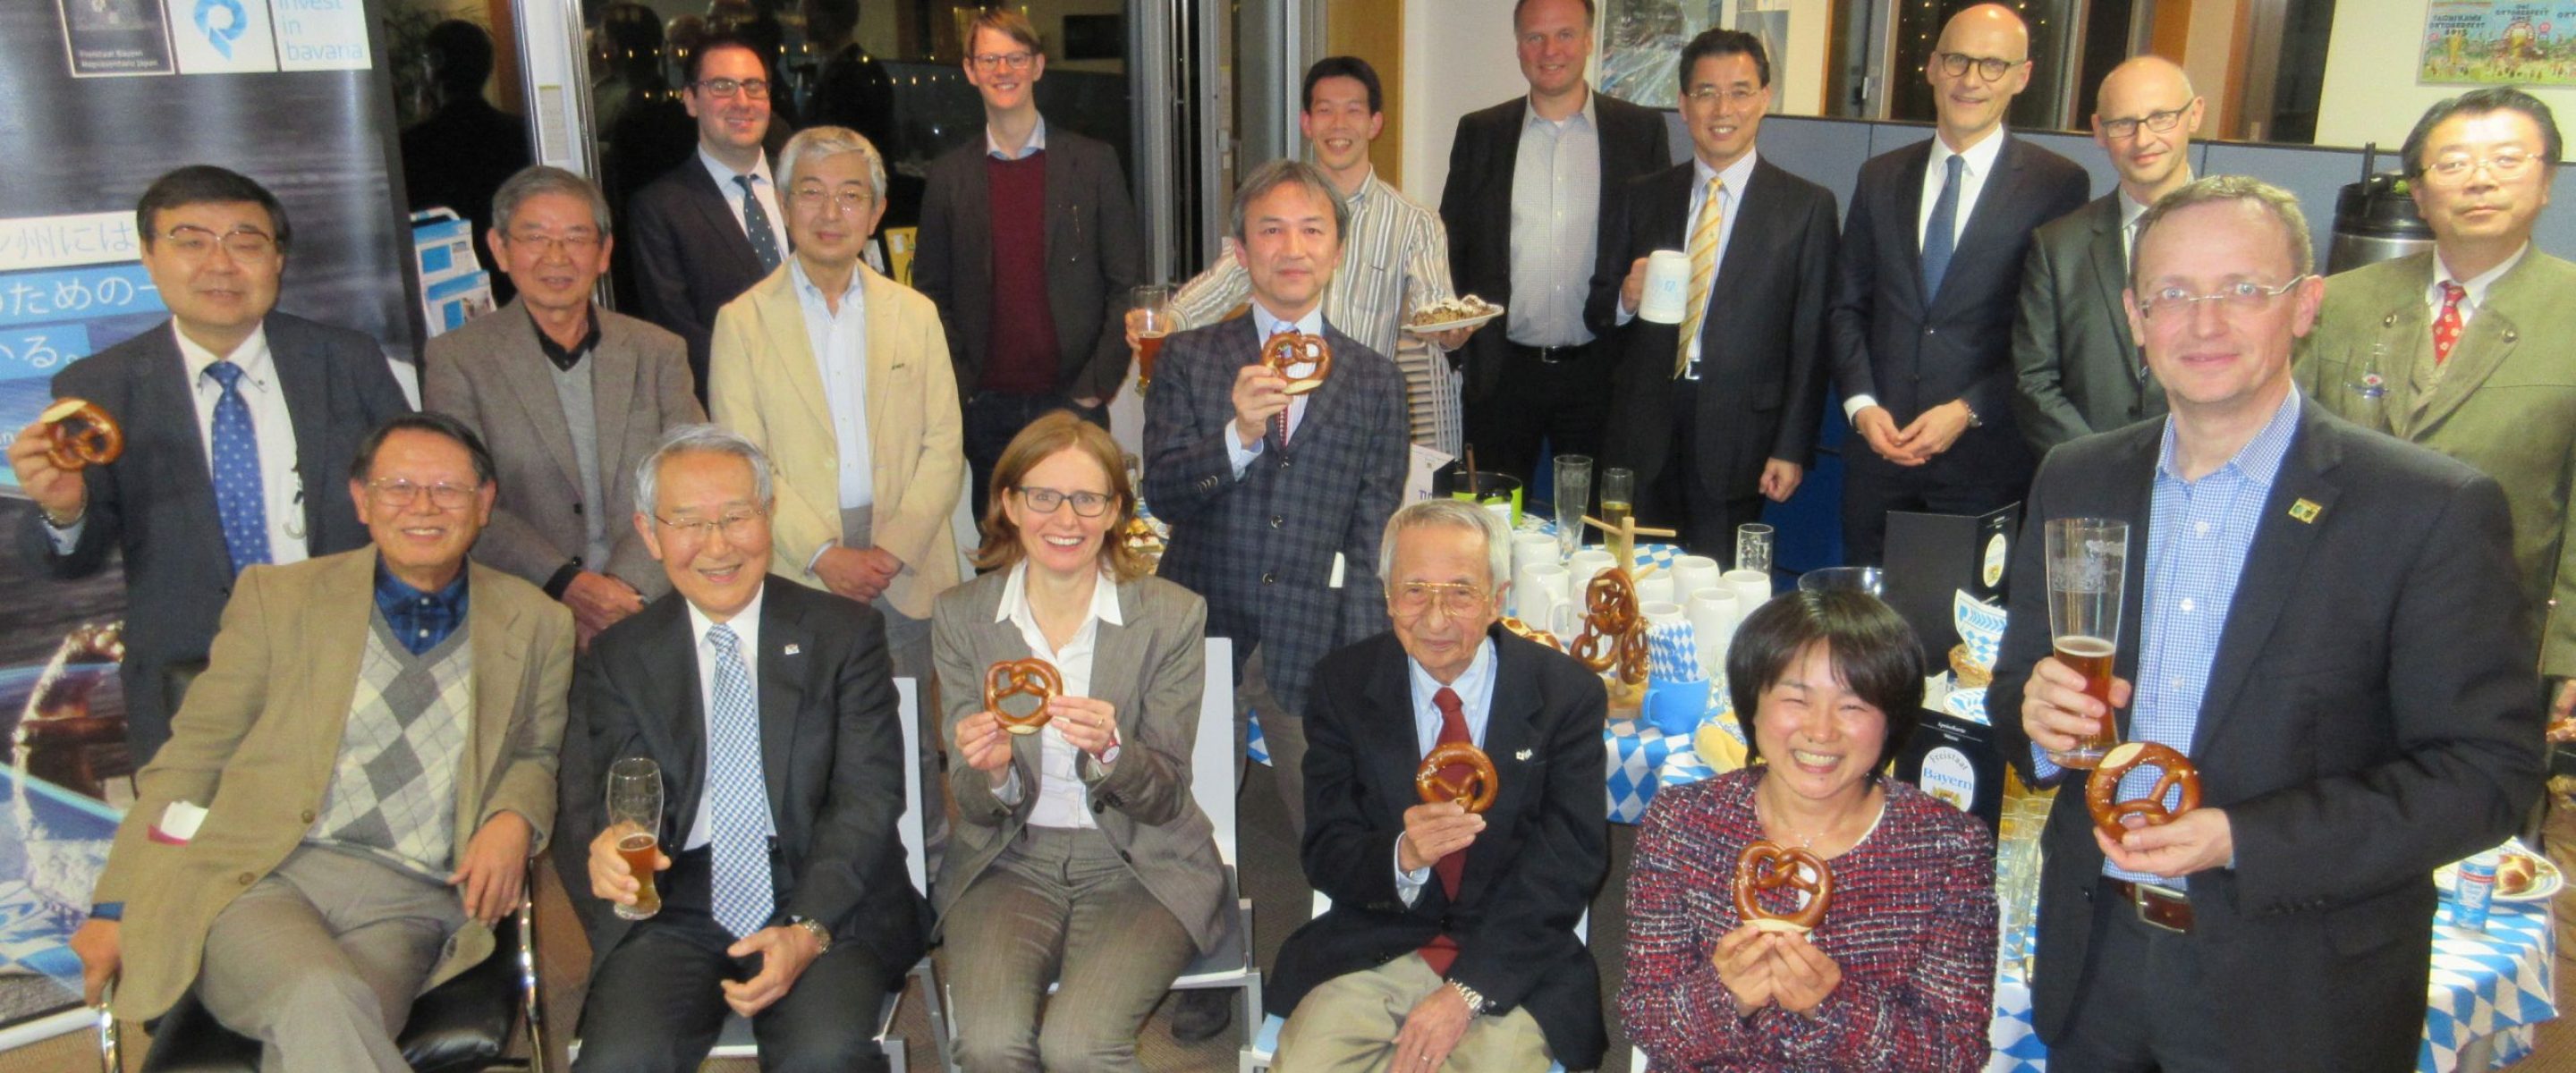 Am 6. Dezember 2017 haben die japanischen TUM-Alumni in die bayerische Repräsentanz in Tokyo eingeladen. Sie feierten nicht nur das 10. Jahrestreffen der japanischen Alumni-Gruppe, sondern stießen auch auf den 150. Geburtstag der TUM an und gaben den Startschuss für die Alumni-Jubiläumsreihe „Dine Around the World“ (Bild: Yukou Mochida).